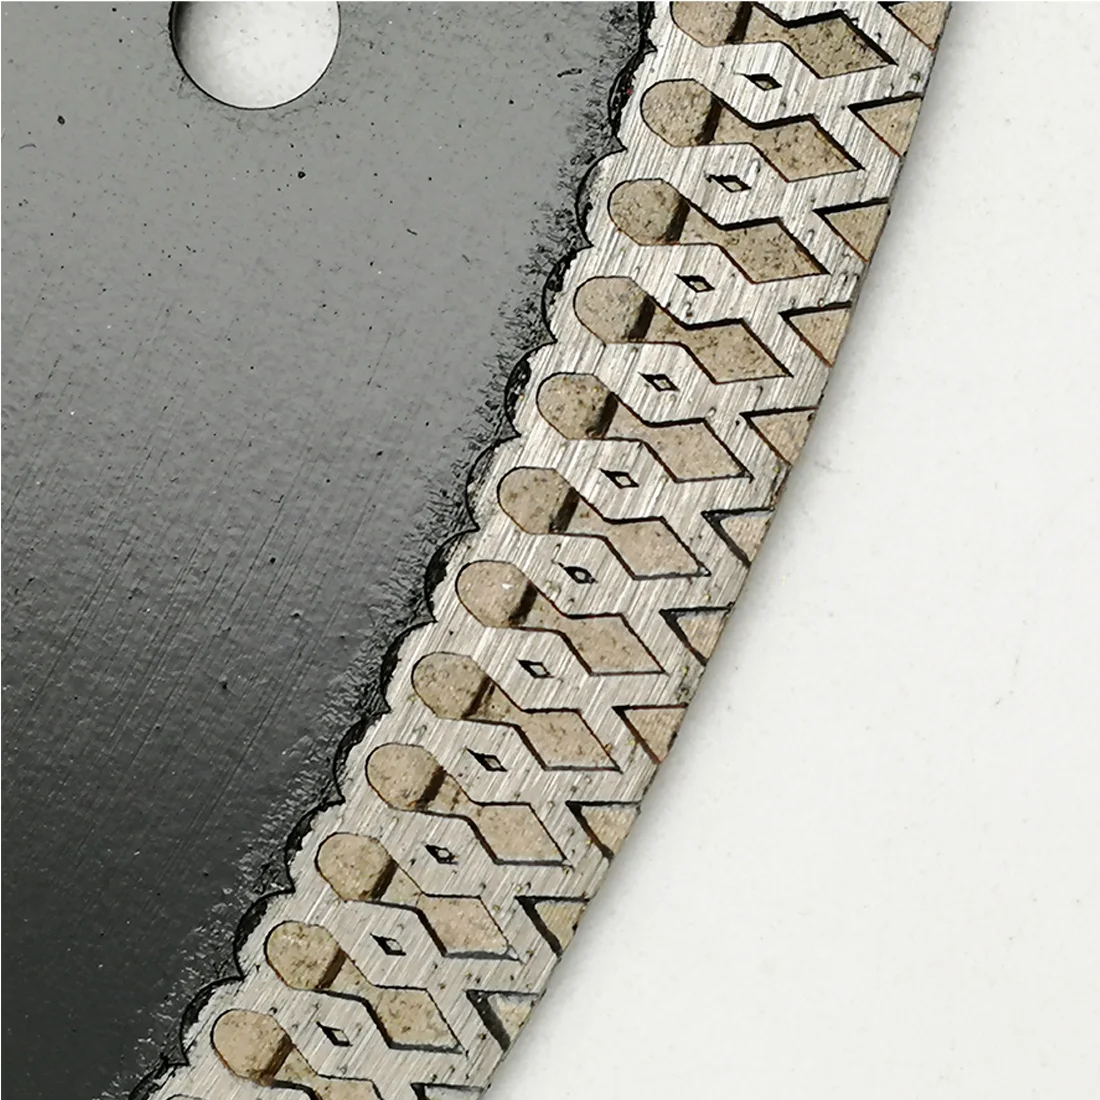 DT-DIATOOL 1 шт. диаметр 1" /300 мм Горячий-прессованный высококачественный X сетка турбо сухой или влажный алмазный режущий диск для мраморной Плиткорез лезвия